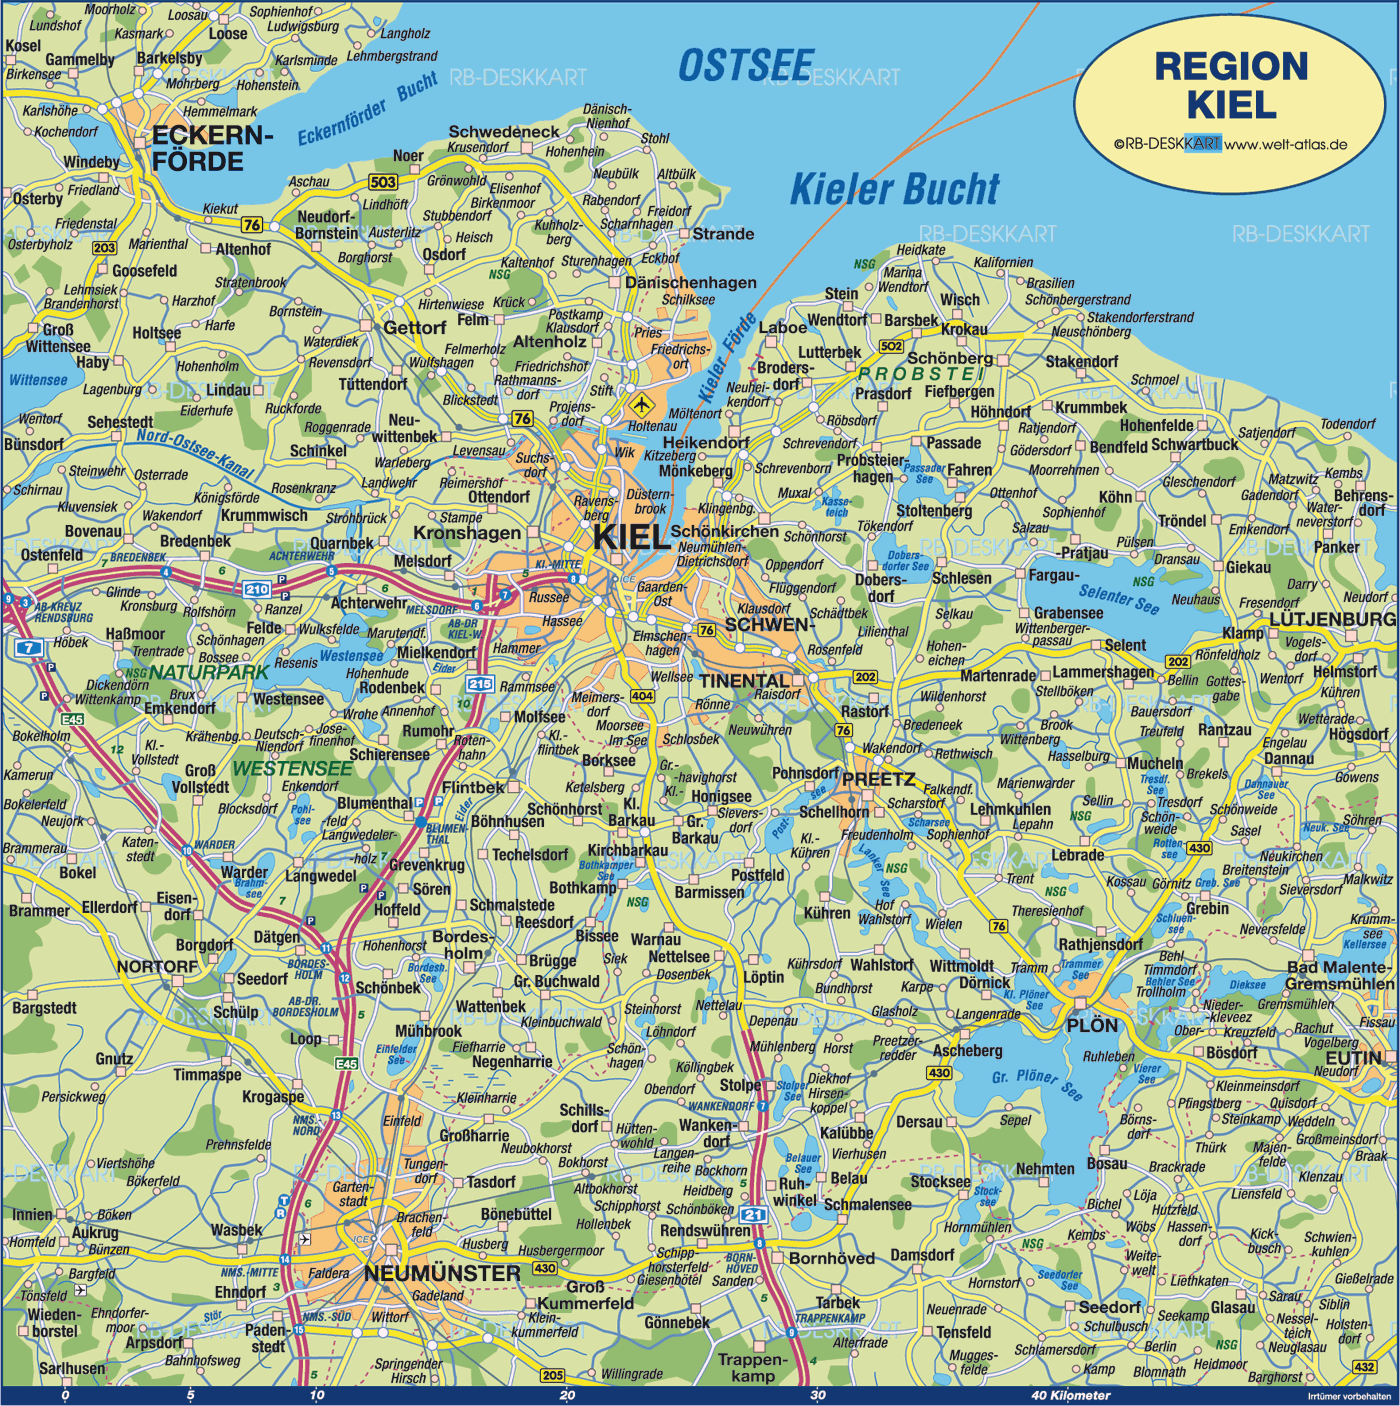 Kiel zone plan